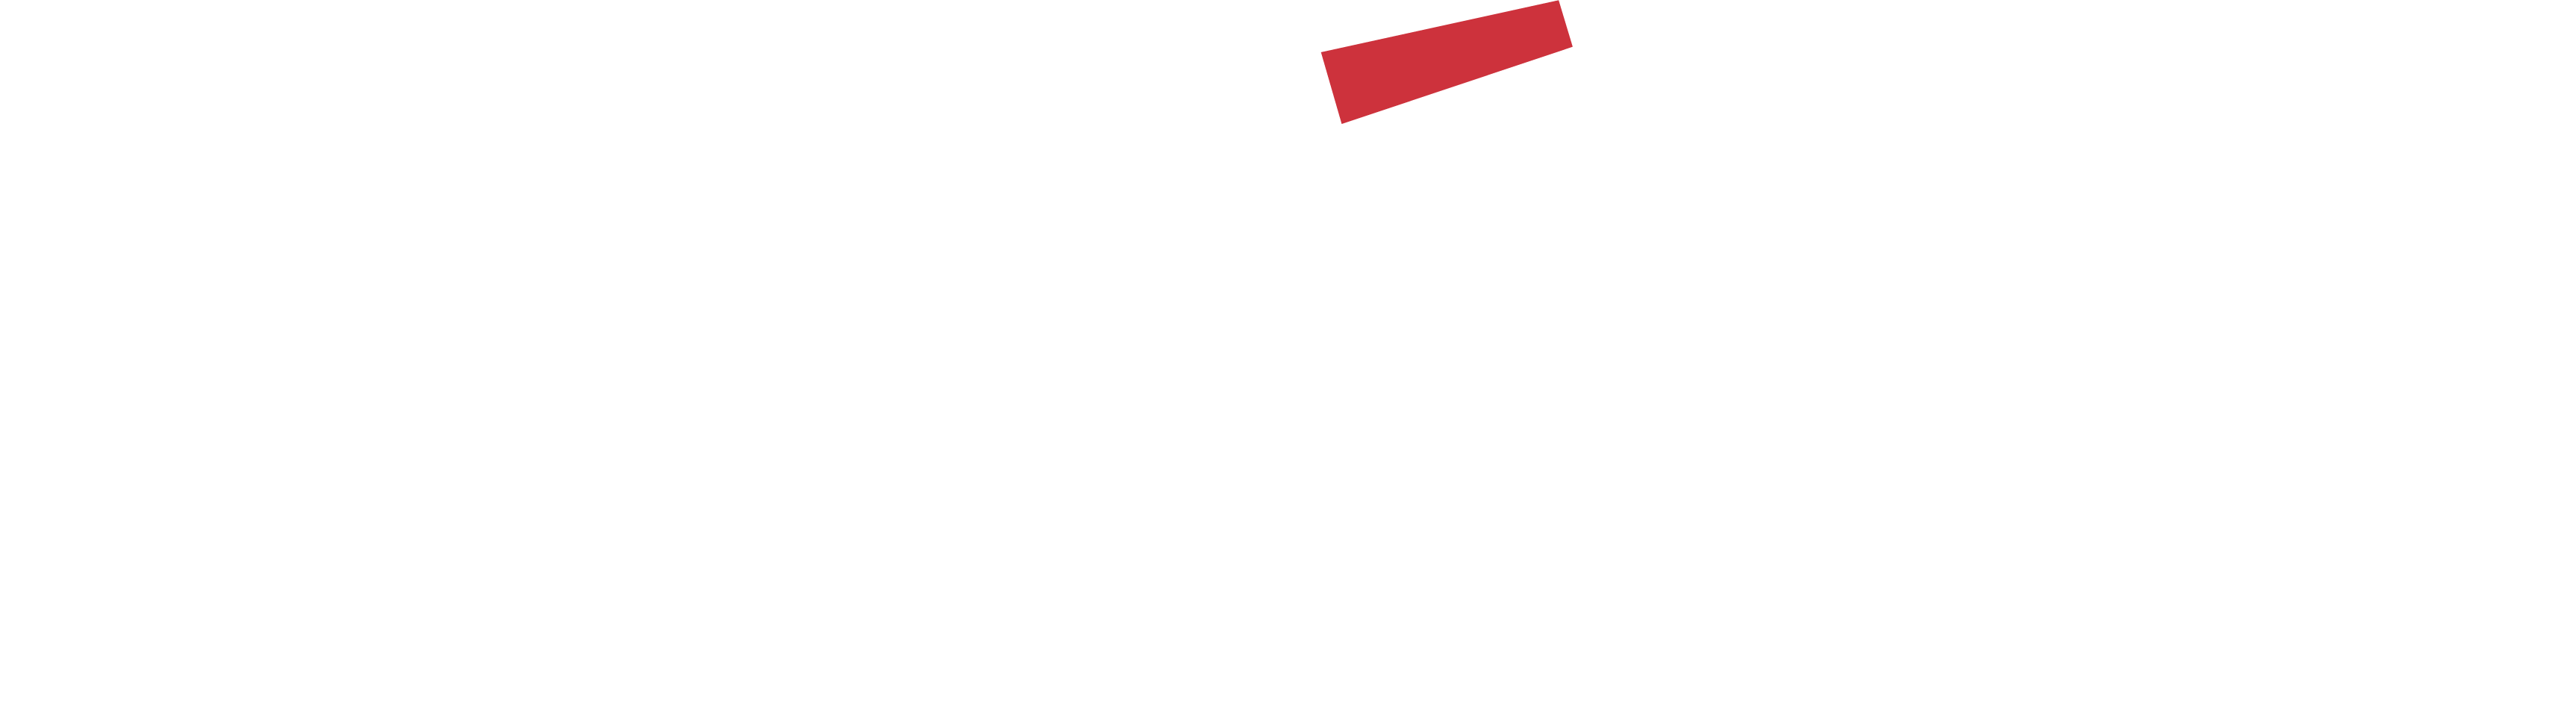 Akademos-Logo_White&Red